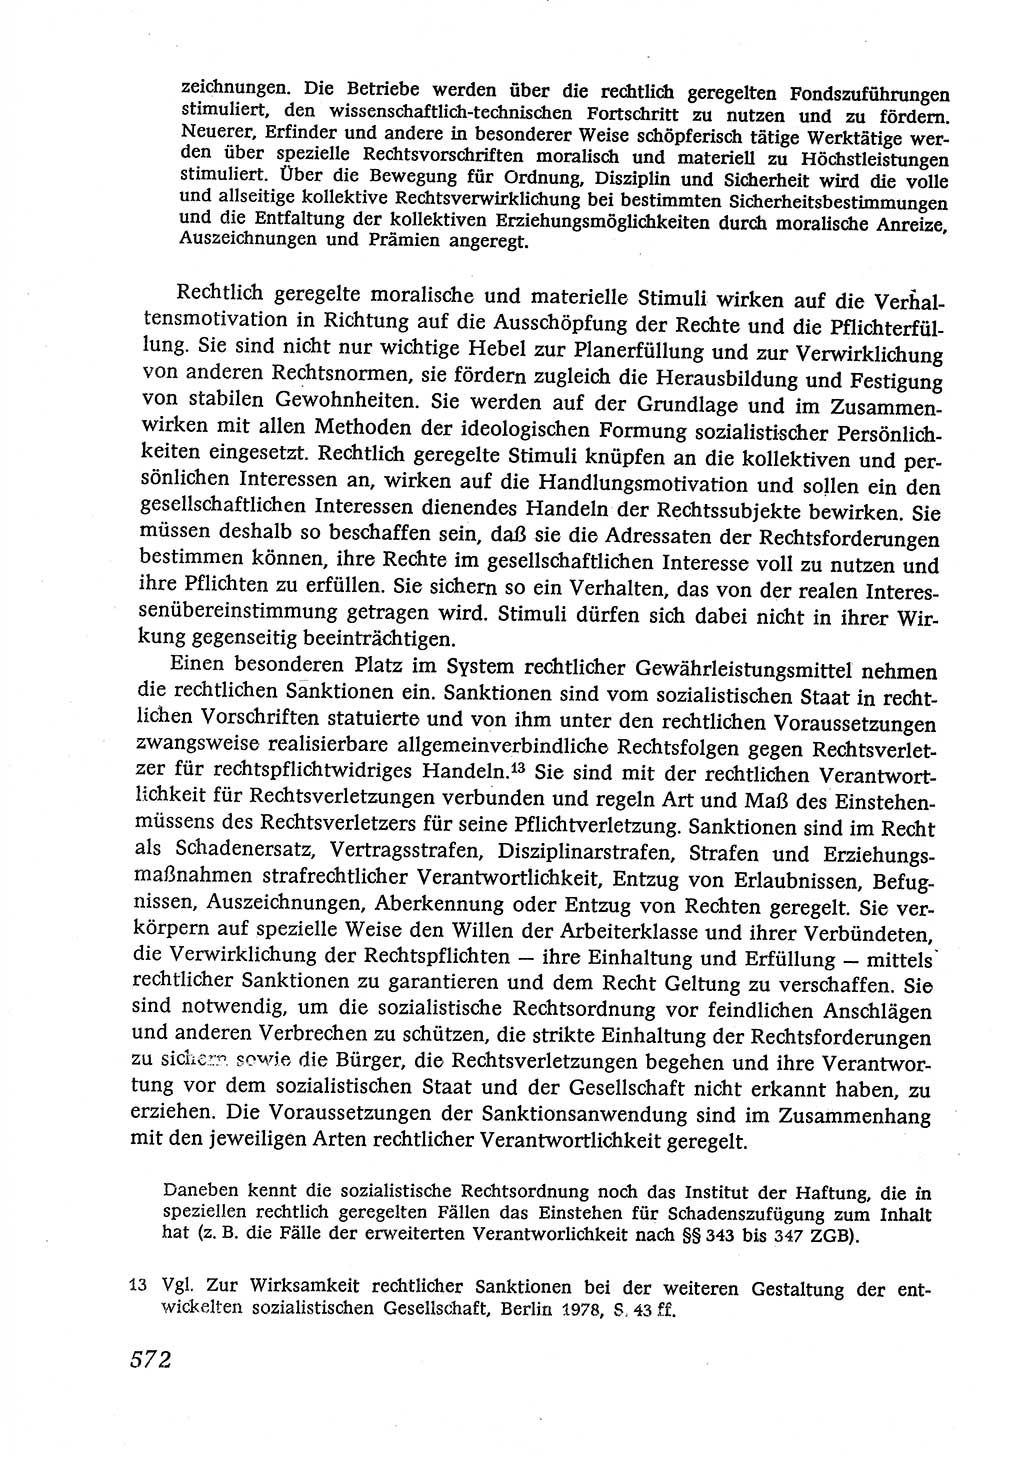 Marxistisch-leninistische (ML) Staats- und Rechtstheorie [Deutsche Demokratische Republik (DDR)], Lehrbuch 1980, Seite 572 (ML St.-R.-Th. DDR Lb. 1980, S. 572)